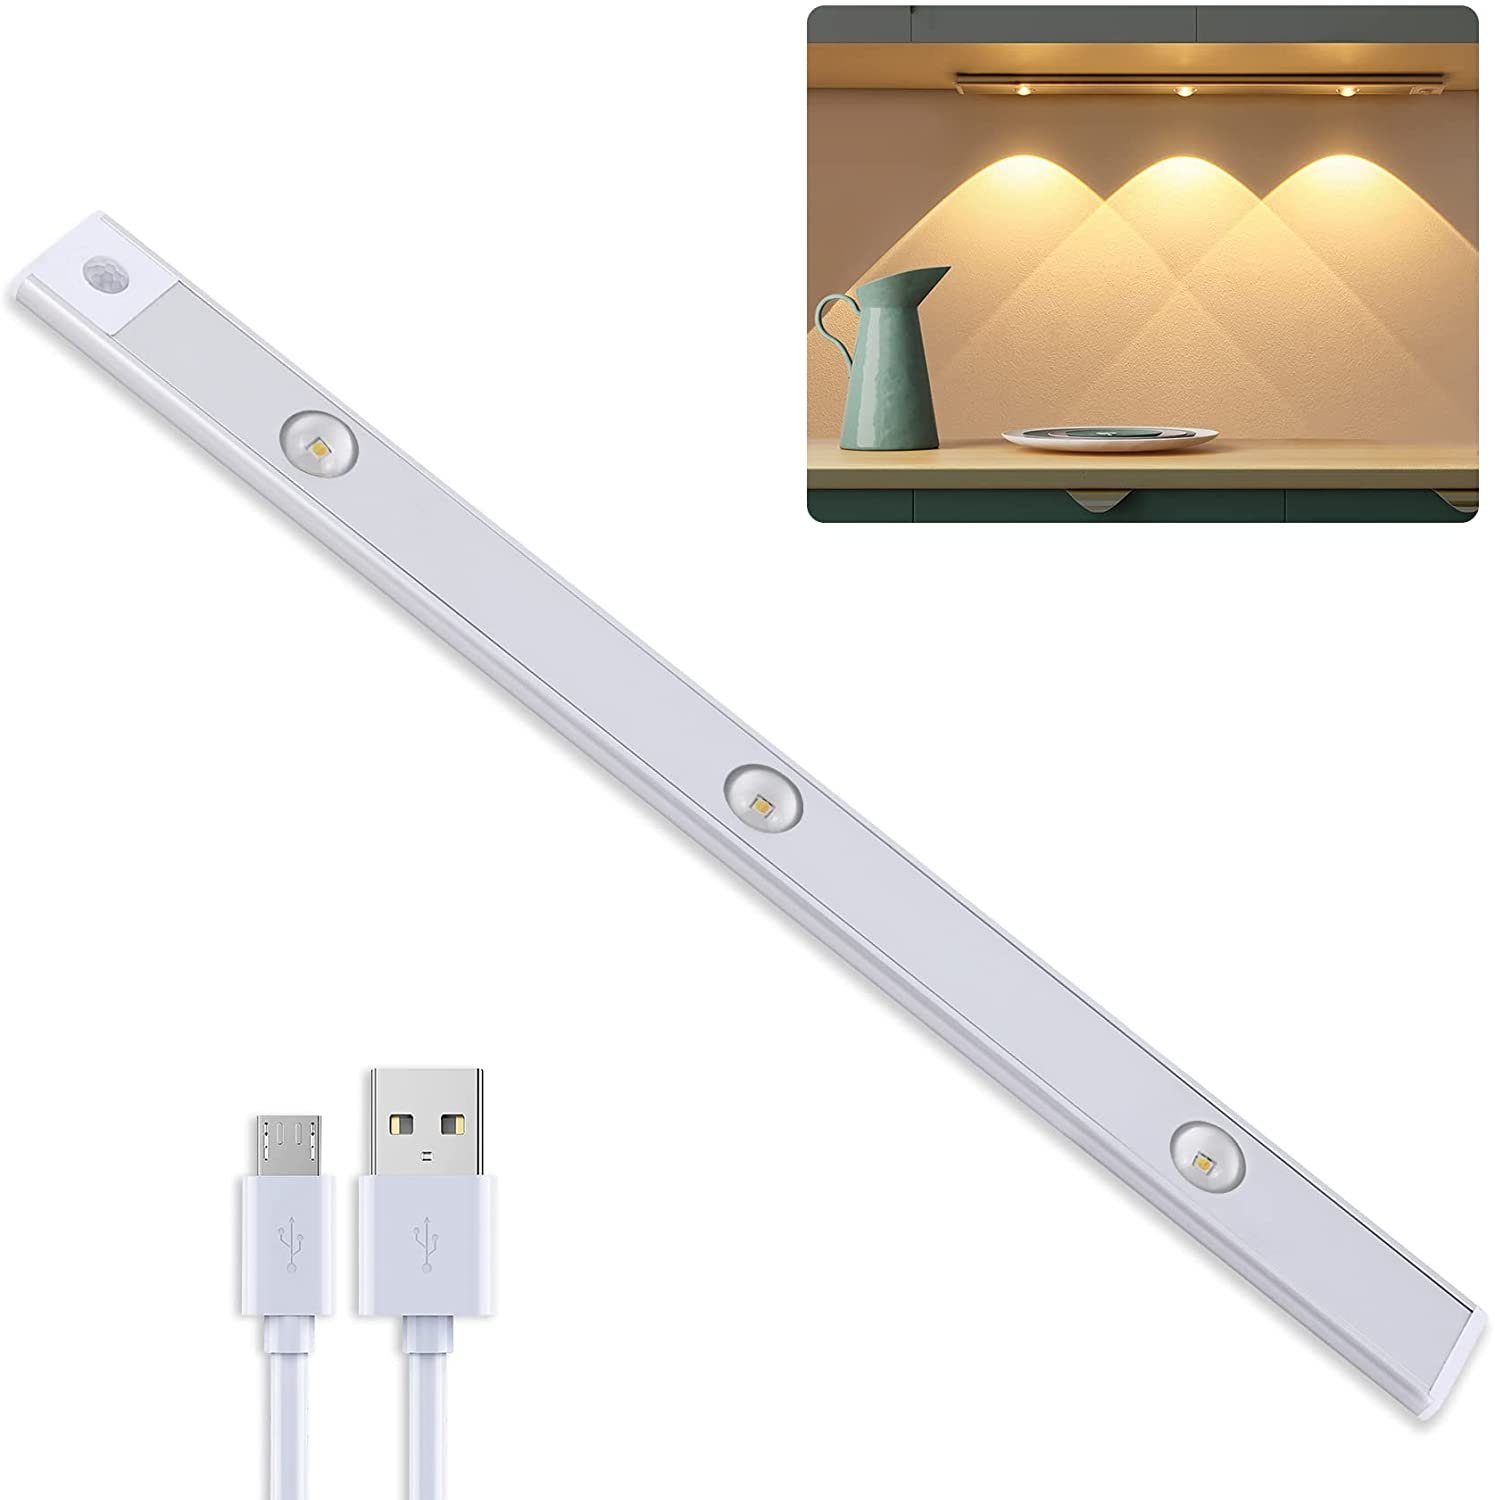 Kaufe LED-Bewegungsmelder, Schrank-Nachtlicht, kabellose USB-LED